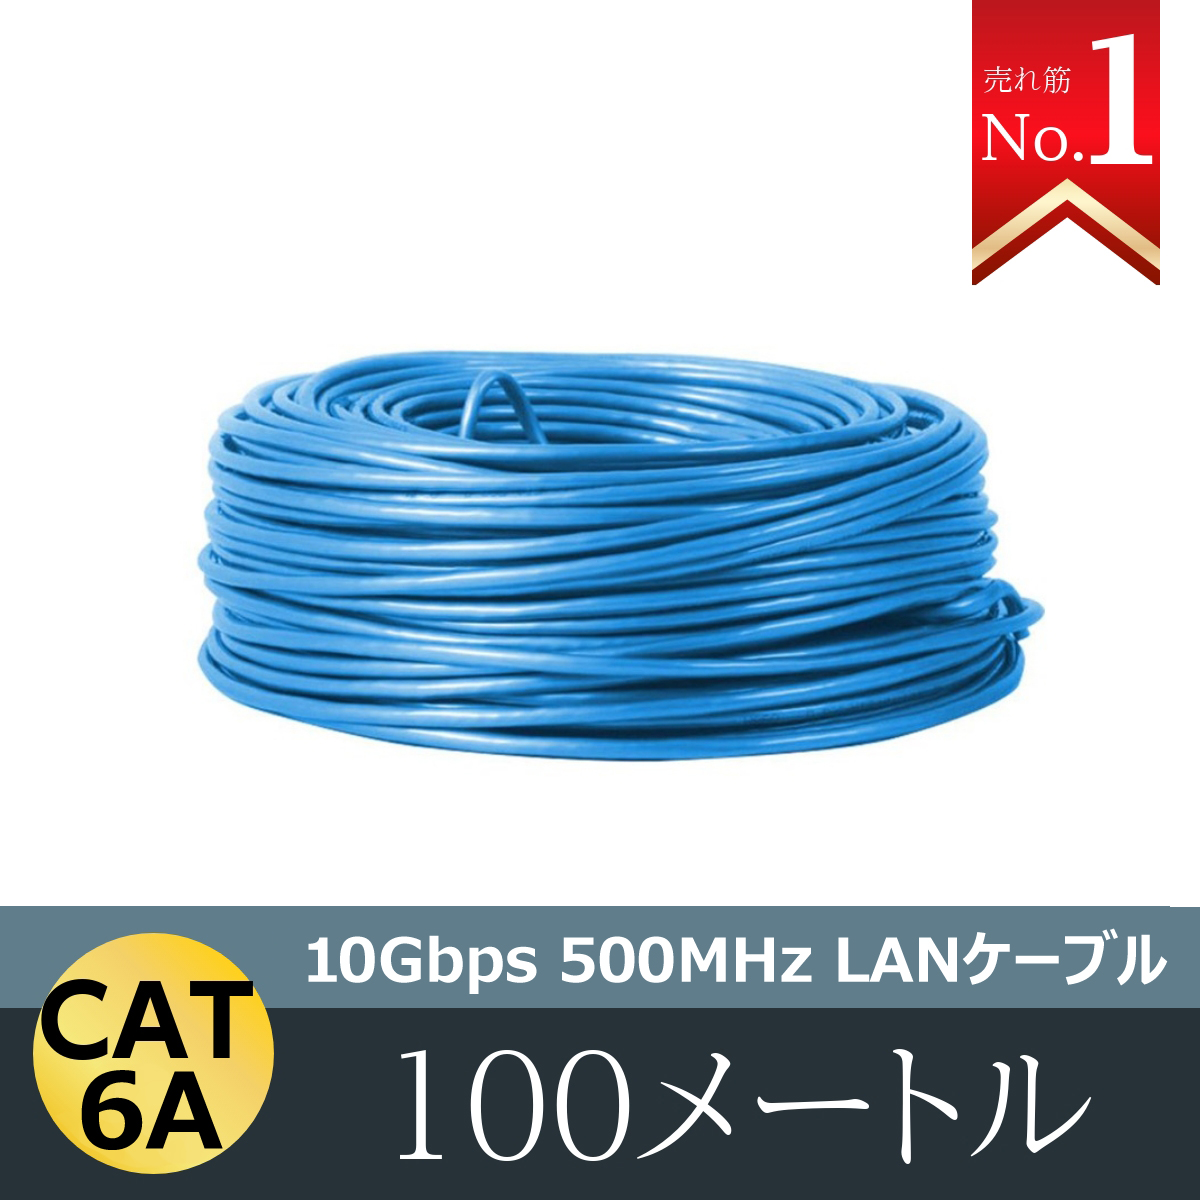 スマホ・タブレット・パソコンLANケーブル 300m 1巻 CAT 6A 10Gbps 